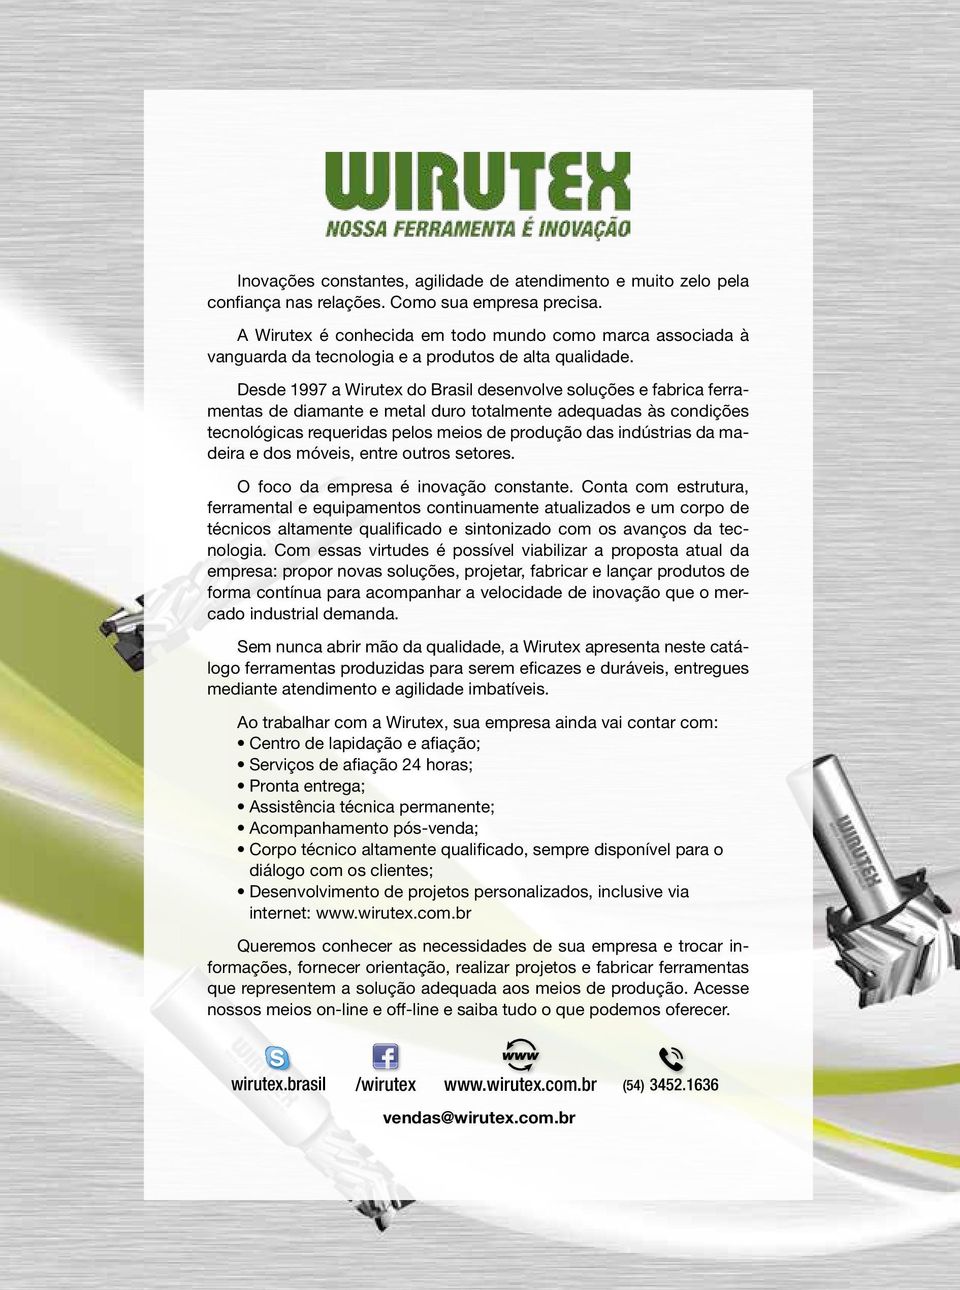 Desde 1997 a Wirutex do Brasil desenvolve soluções e fabrica ferramentas de diamante e metal duro totalmente adequadas às condições tecnológicas requeridas pelos meios de produção das indústrias da